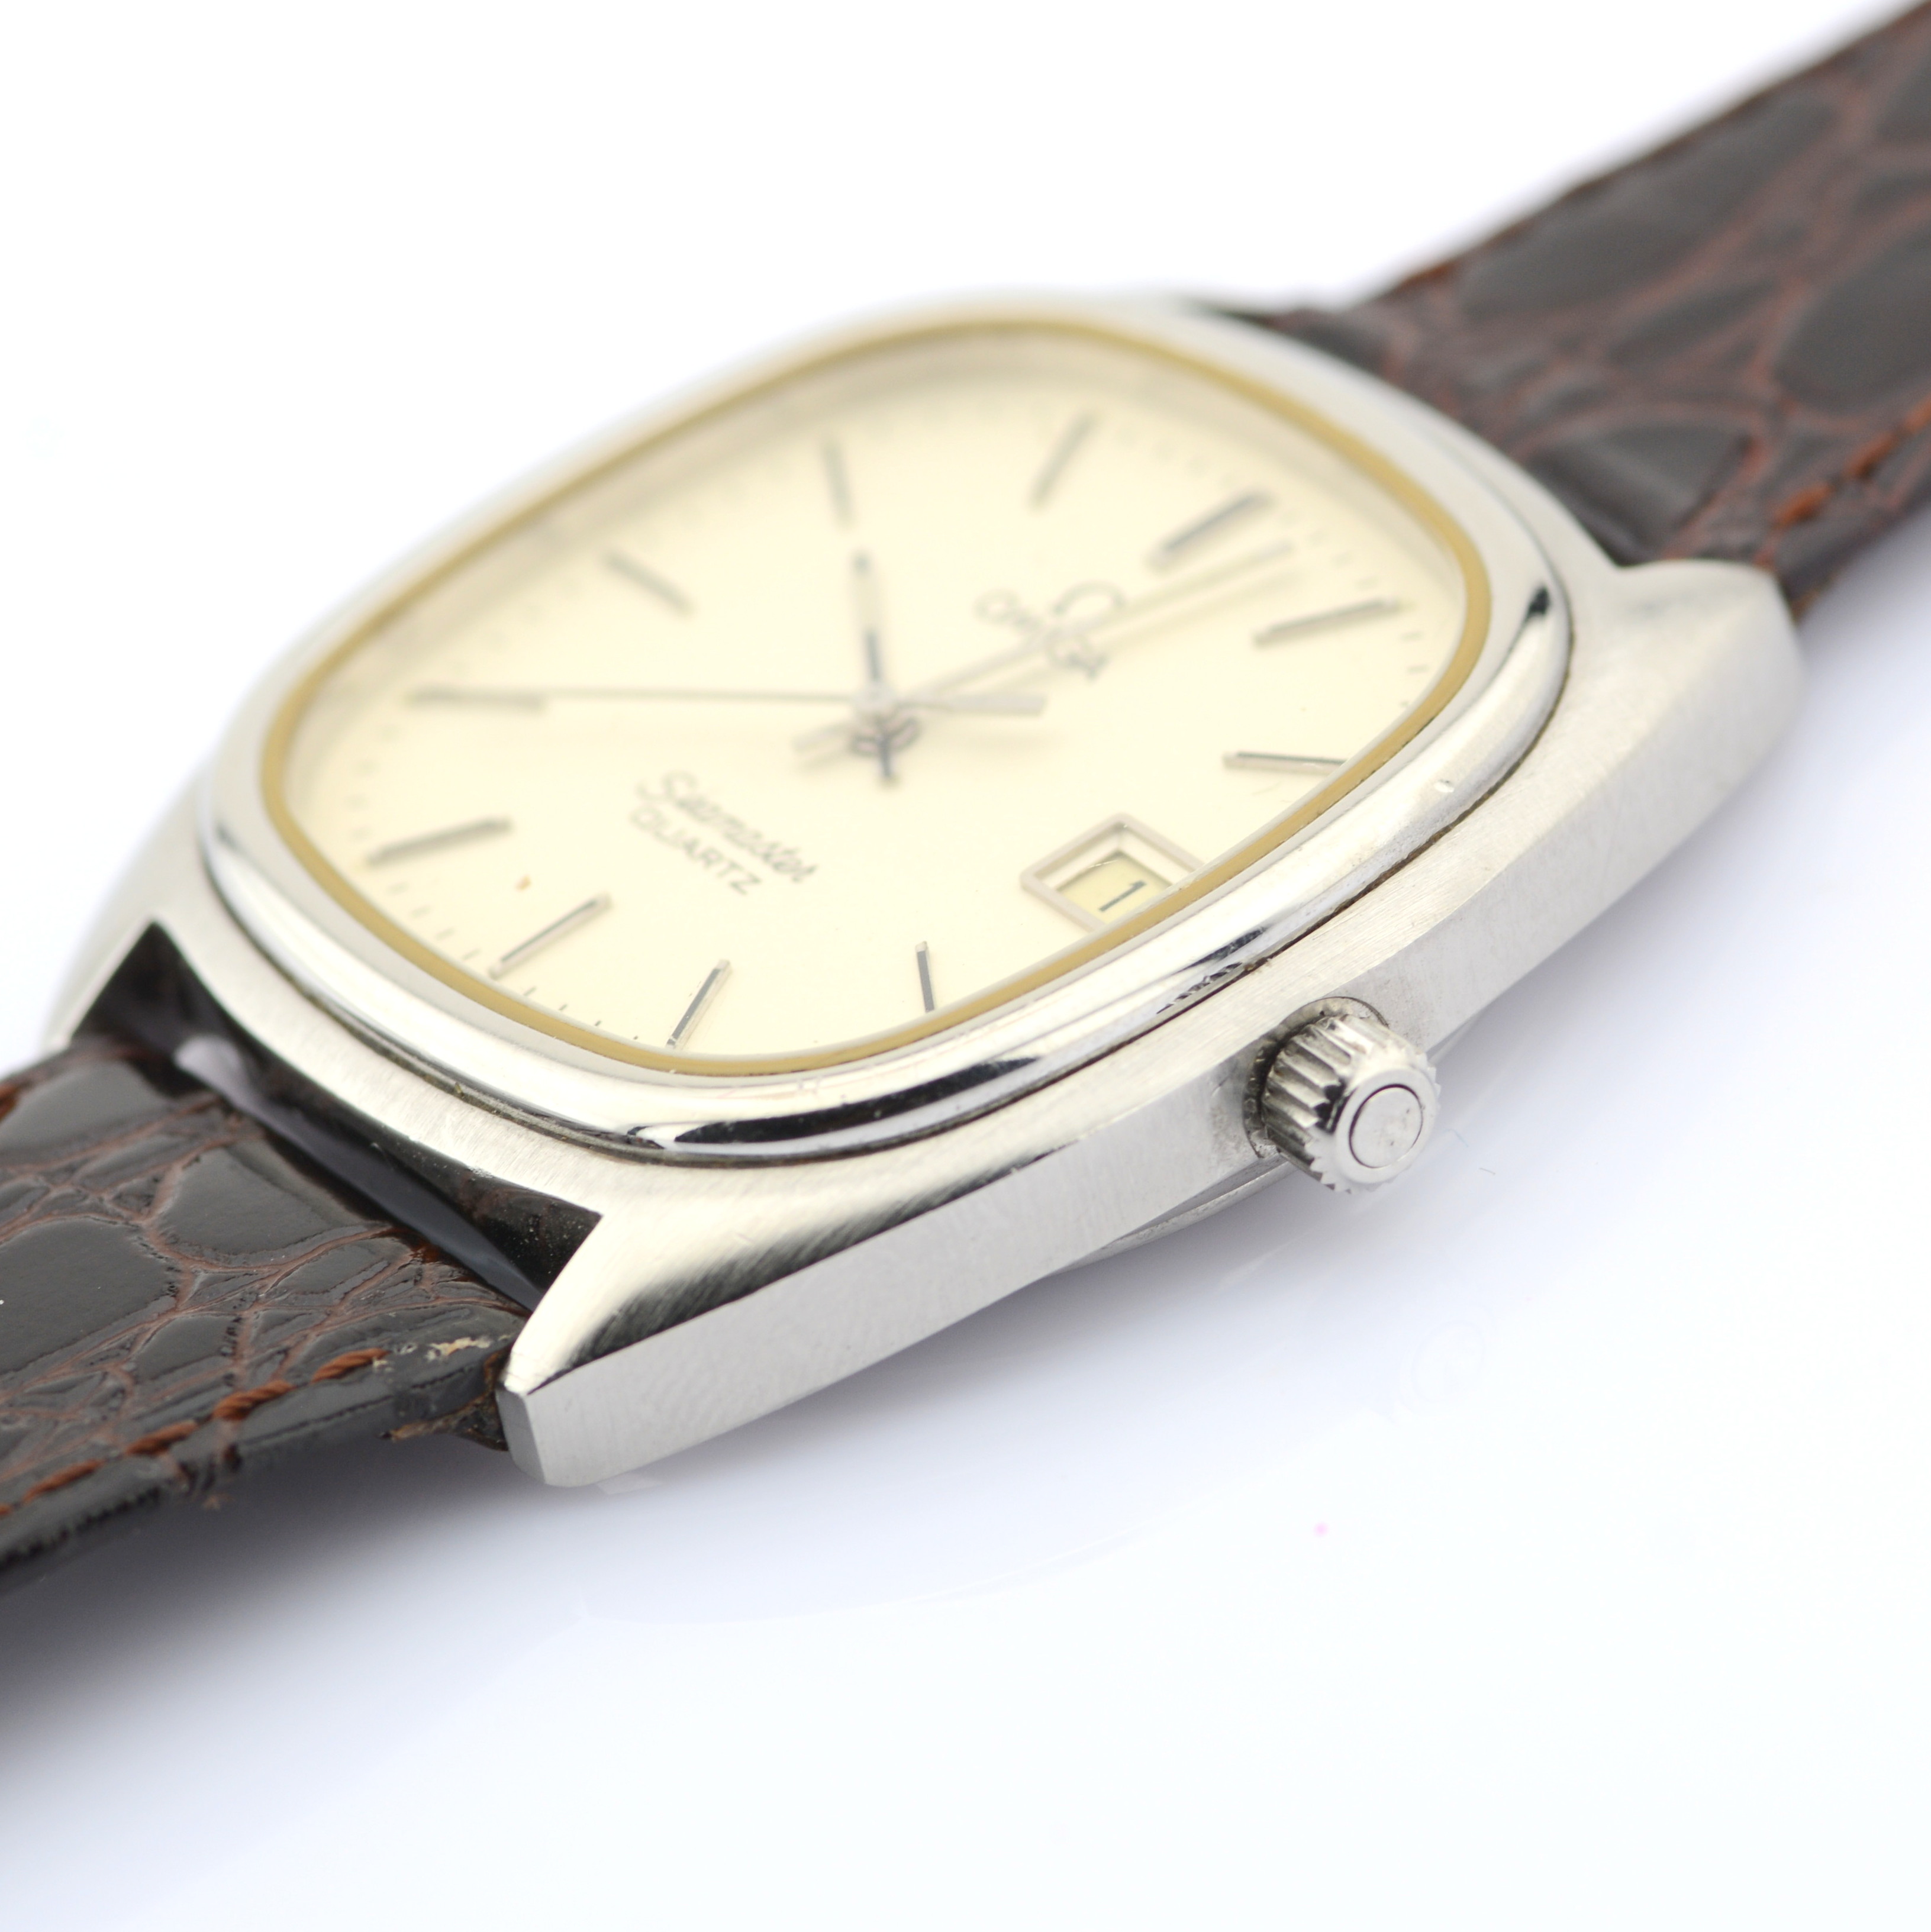 Omega / Seamaster Date 34 mm - Gentlmen's Steel Wrist Watch - Image 5 of 8